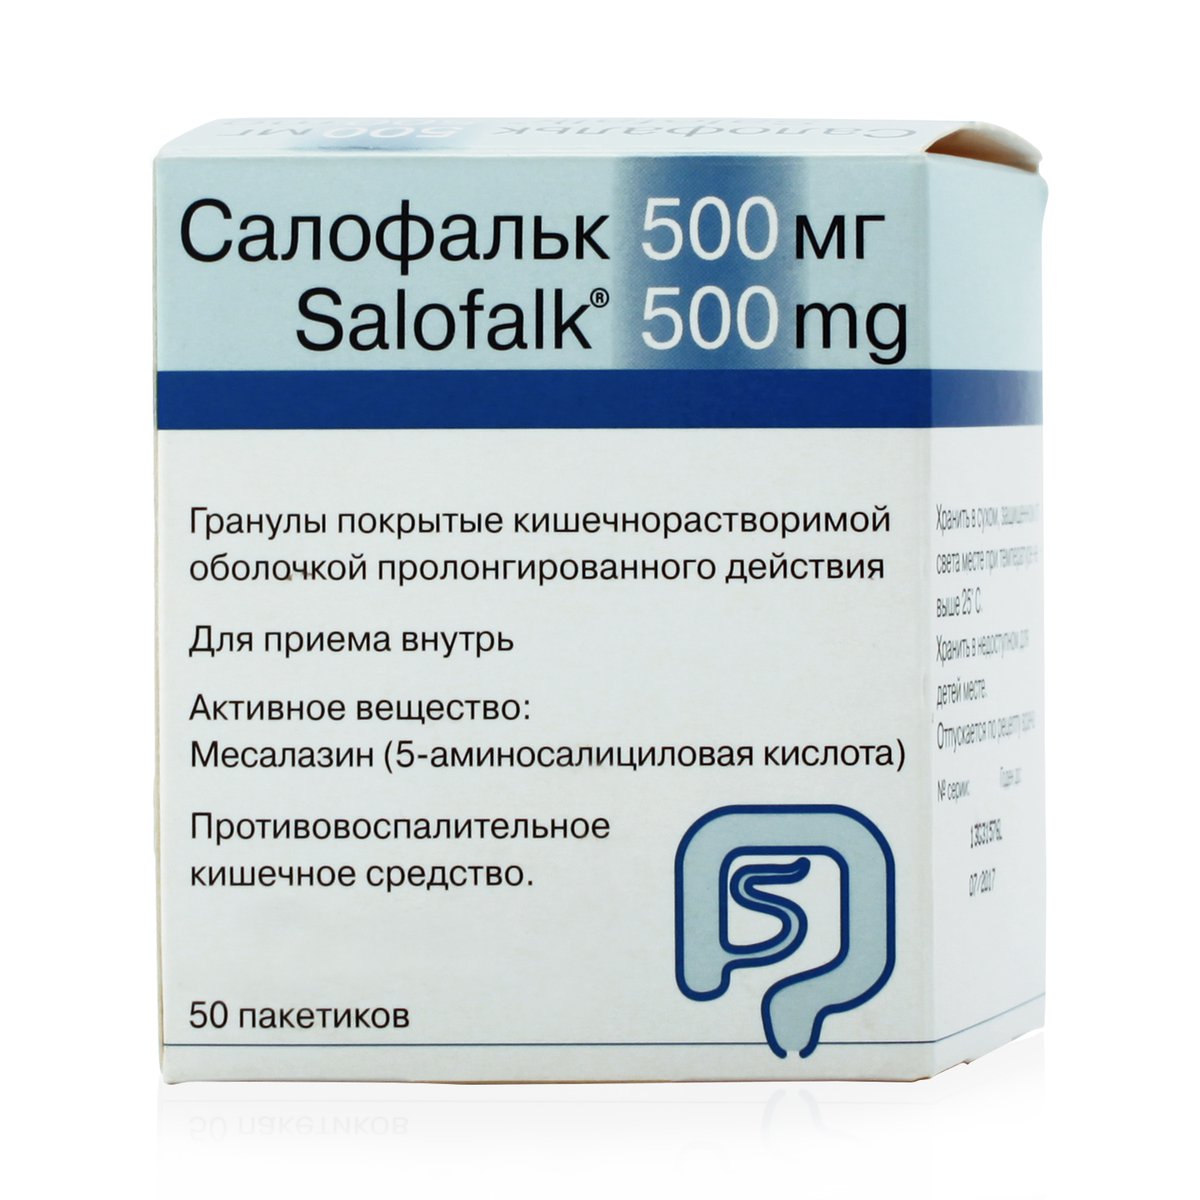 Салофальк (гранулы, 50 шт, 500 мг, для приема внутрь) - цена,  .